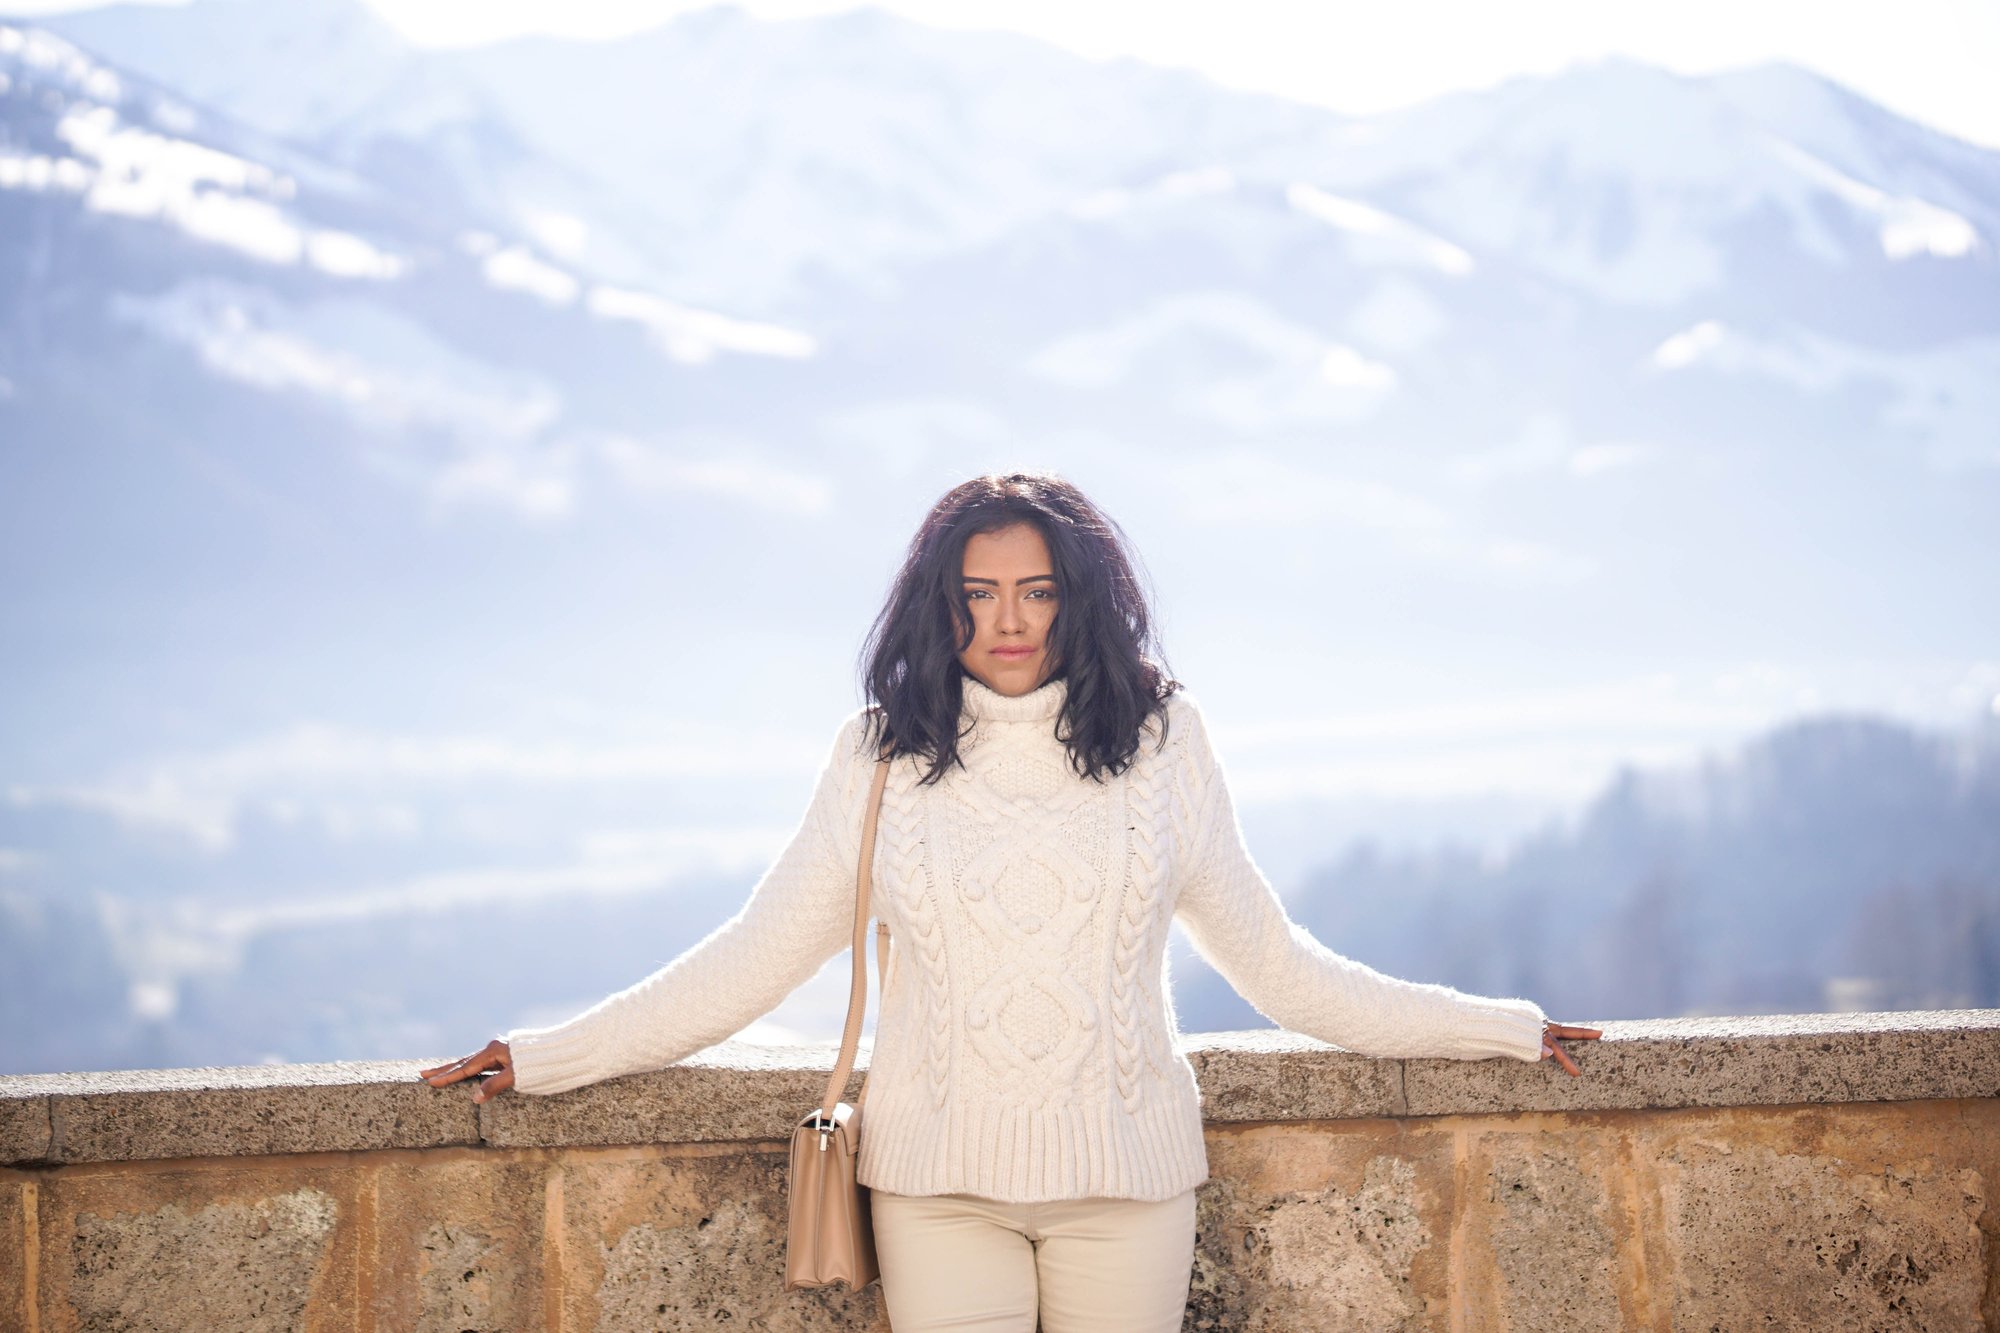 Sachini wearing white in a mountainous environment 